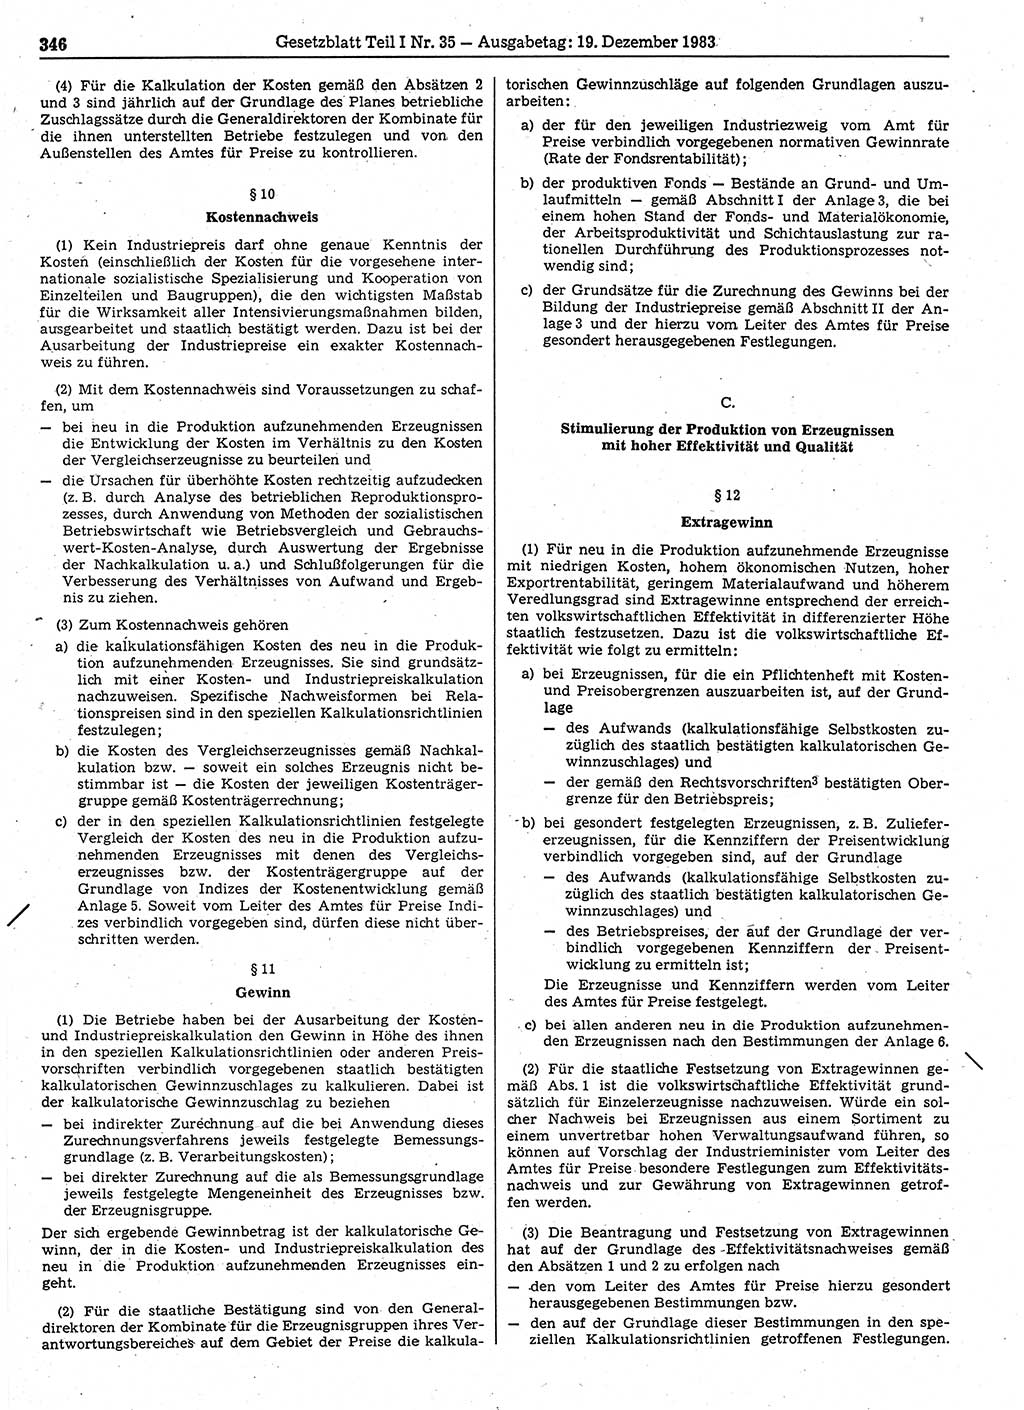 Gesetzblatt (GBl.) der Deutschen Demokratischen Republik (DDR) Teil Ⅰ 1983, Seite 346 (GBl. DDR Ⅰ 1983, S. 346)